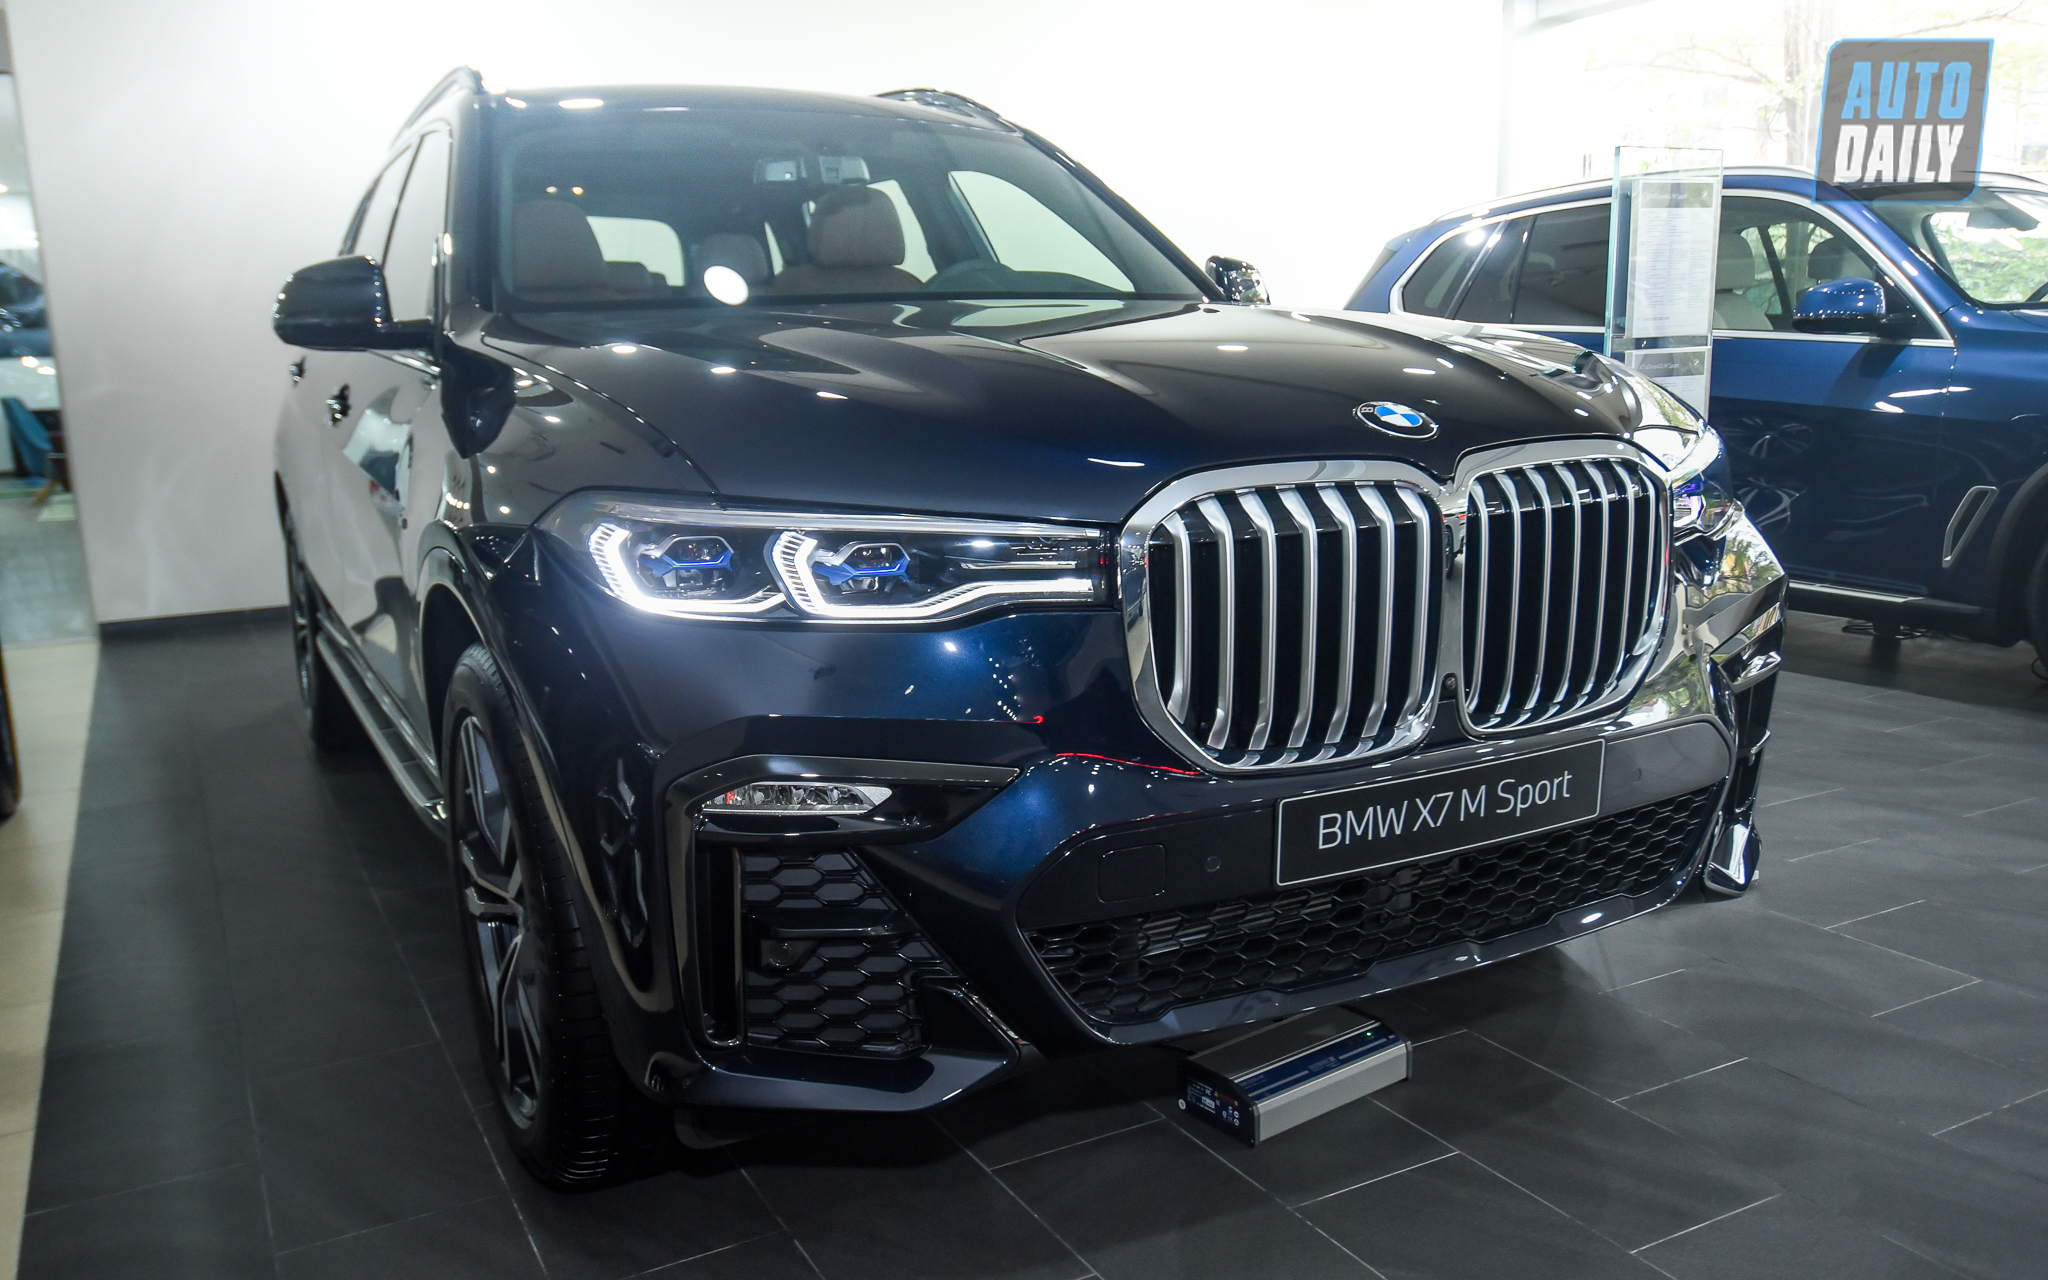 Diện kiến BMW X7 M-Sport 2021 chính hãng giá hơn 5,8 tỷ đồng dsc-6808.jpg